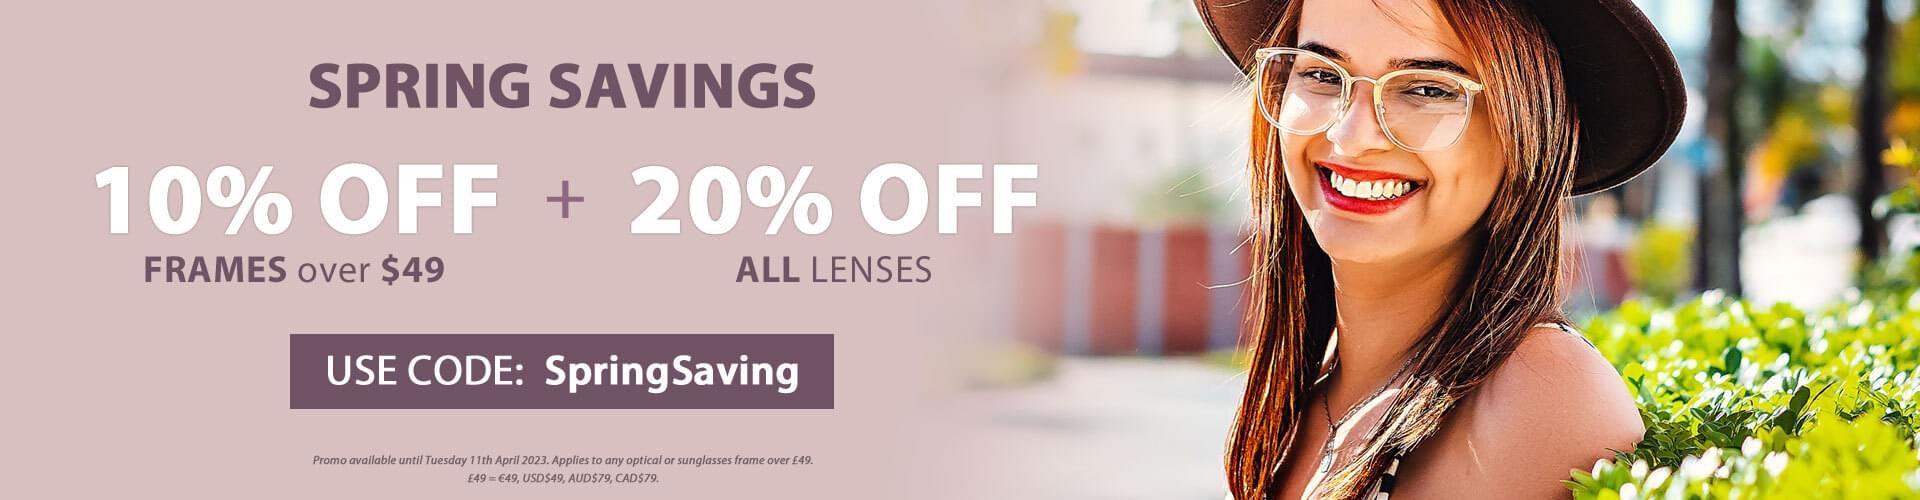 Spring Savings - 10% OFF Frames $49+ & 20% OFF ALL Lenses